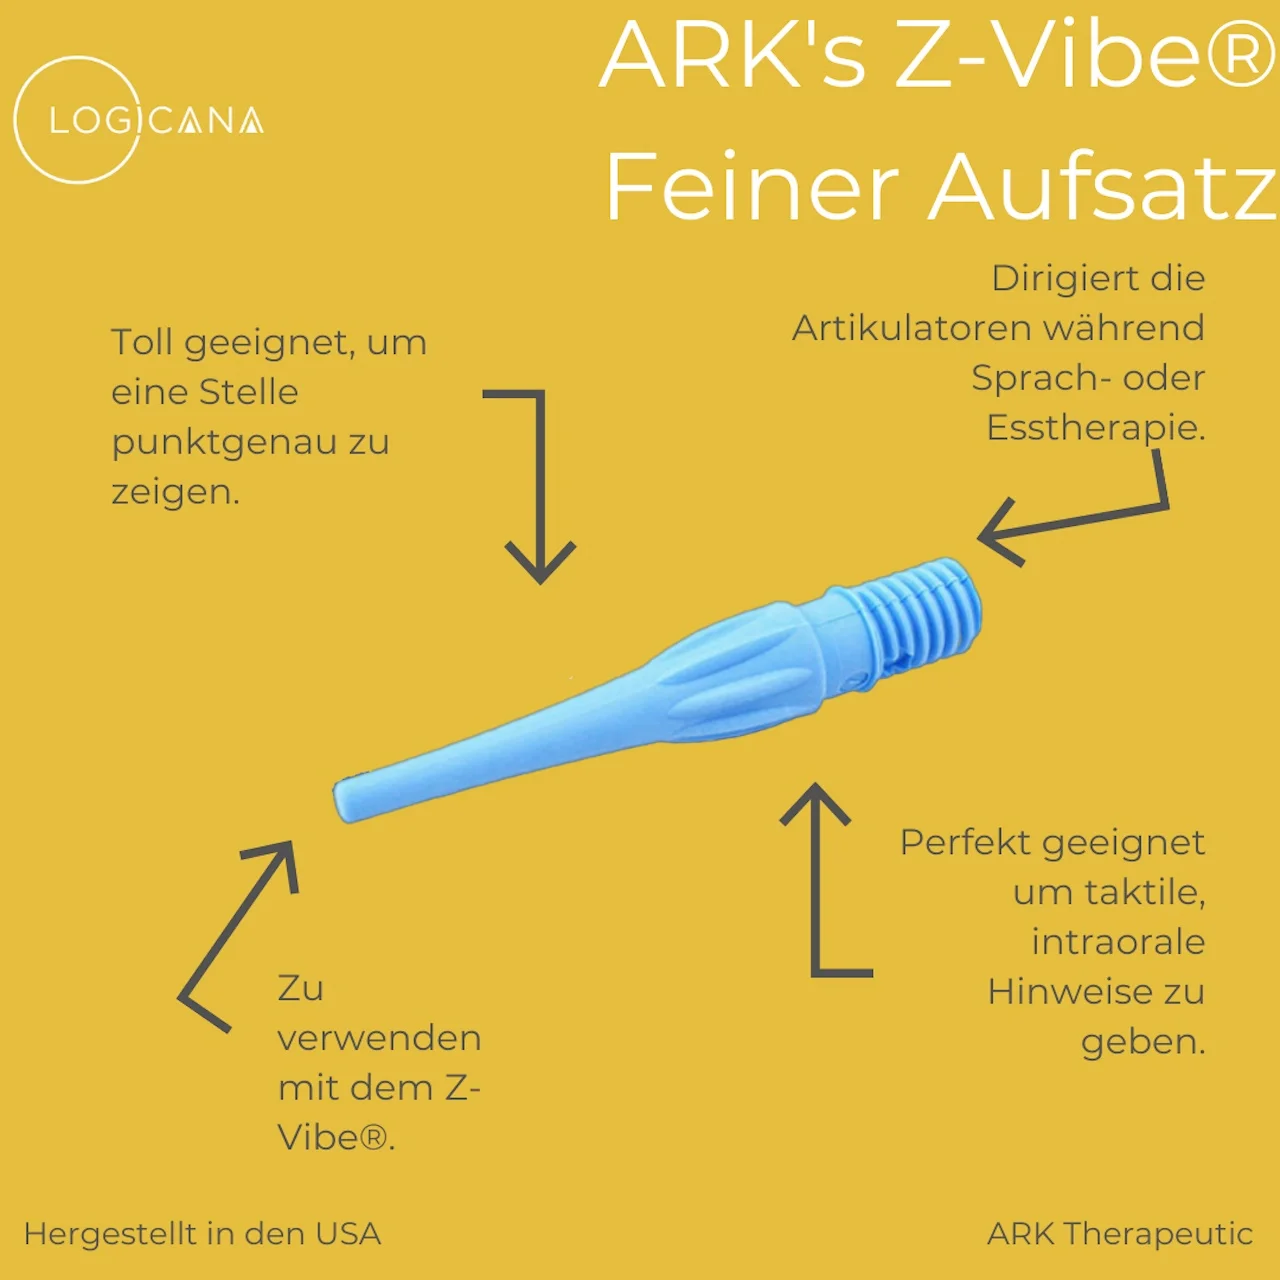 Logicana-Erklärung ARK-Z-Vibe feiner Aufsatz in blau